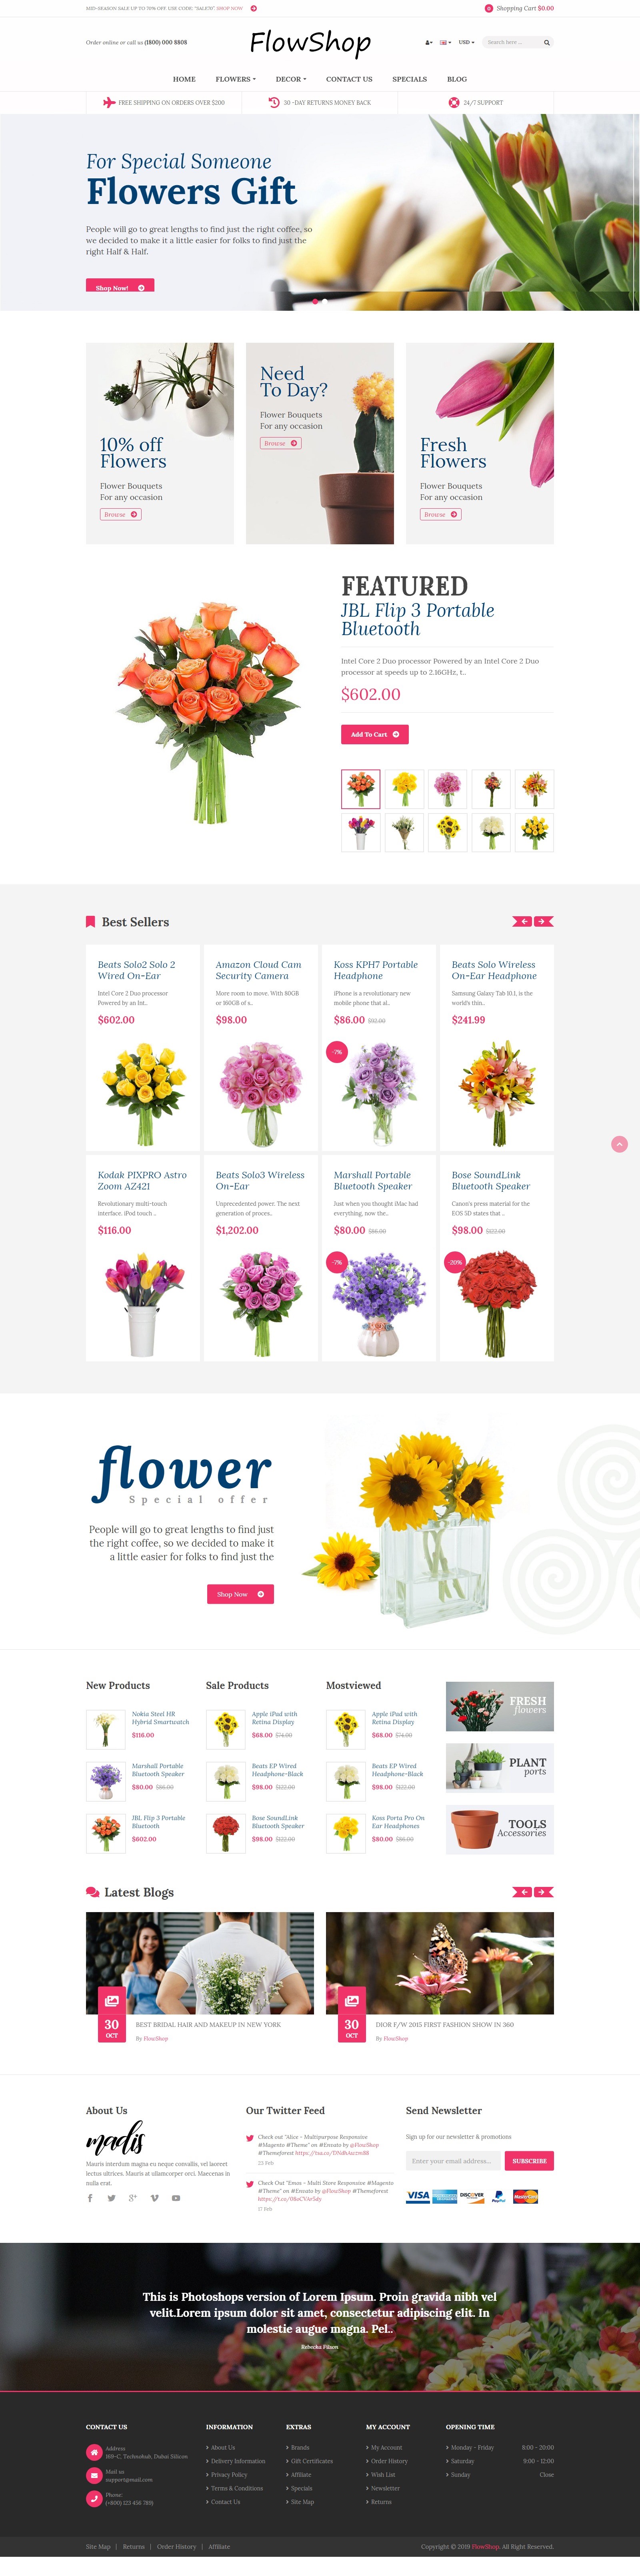 FlowShop - магазин продажи цветов